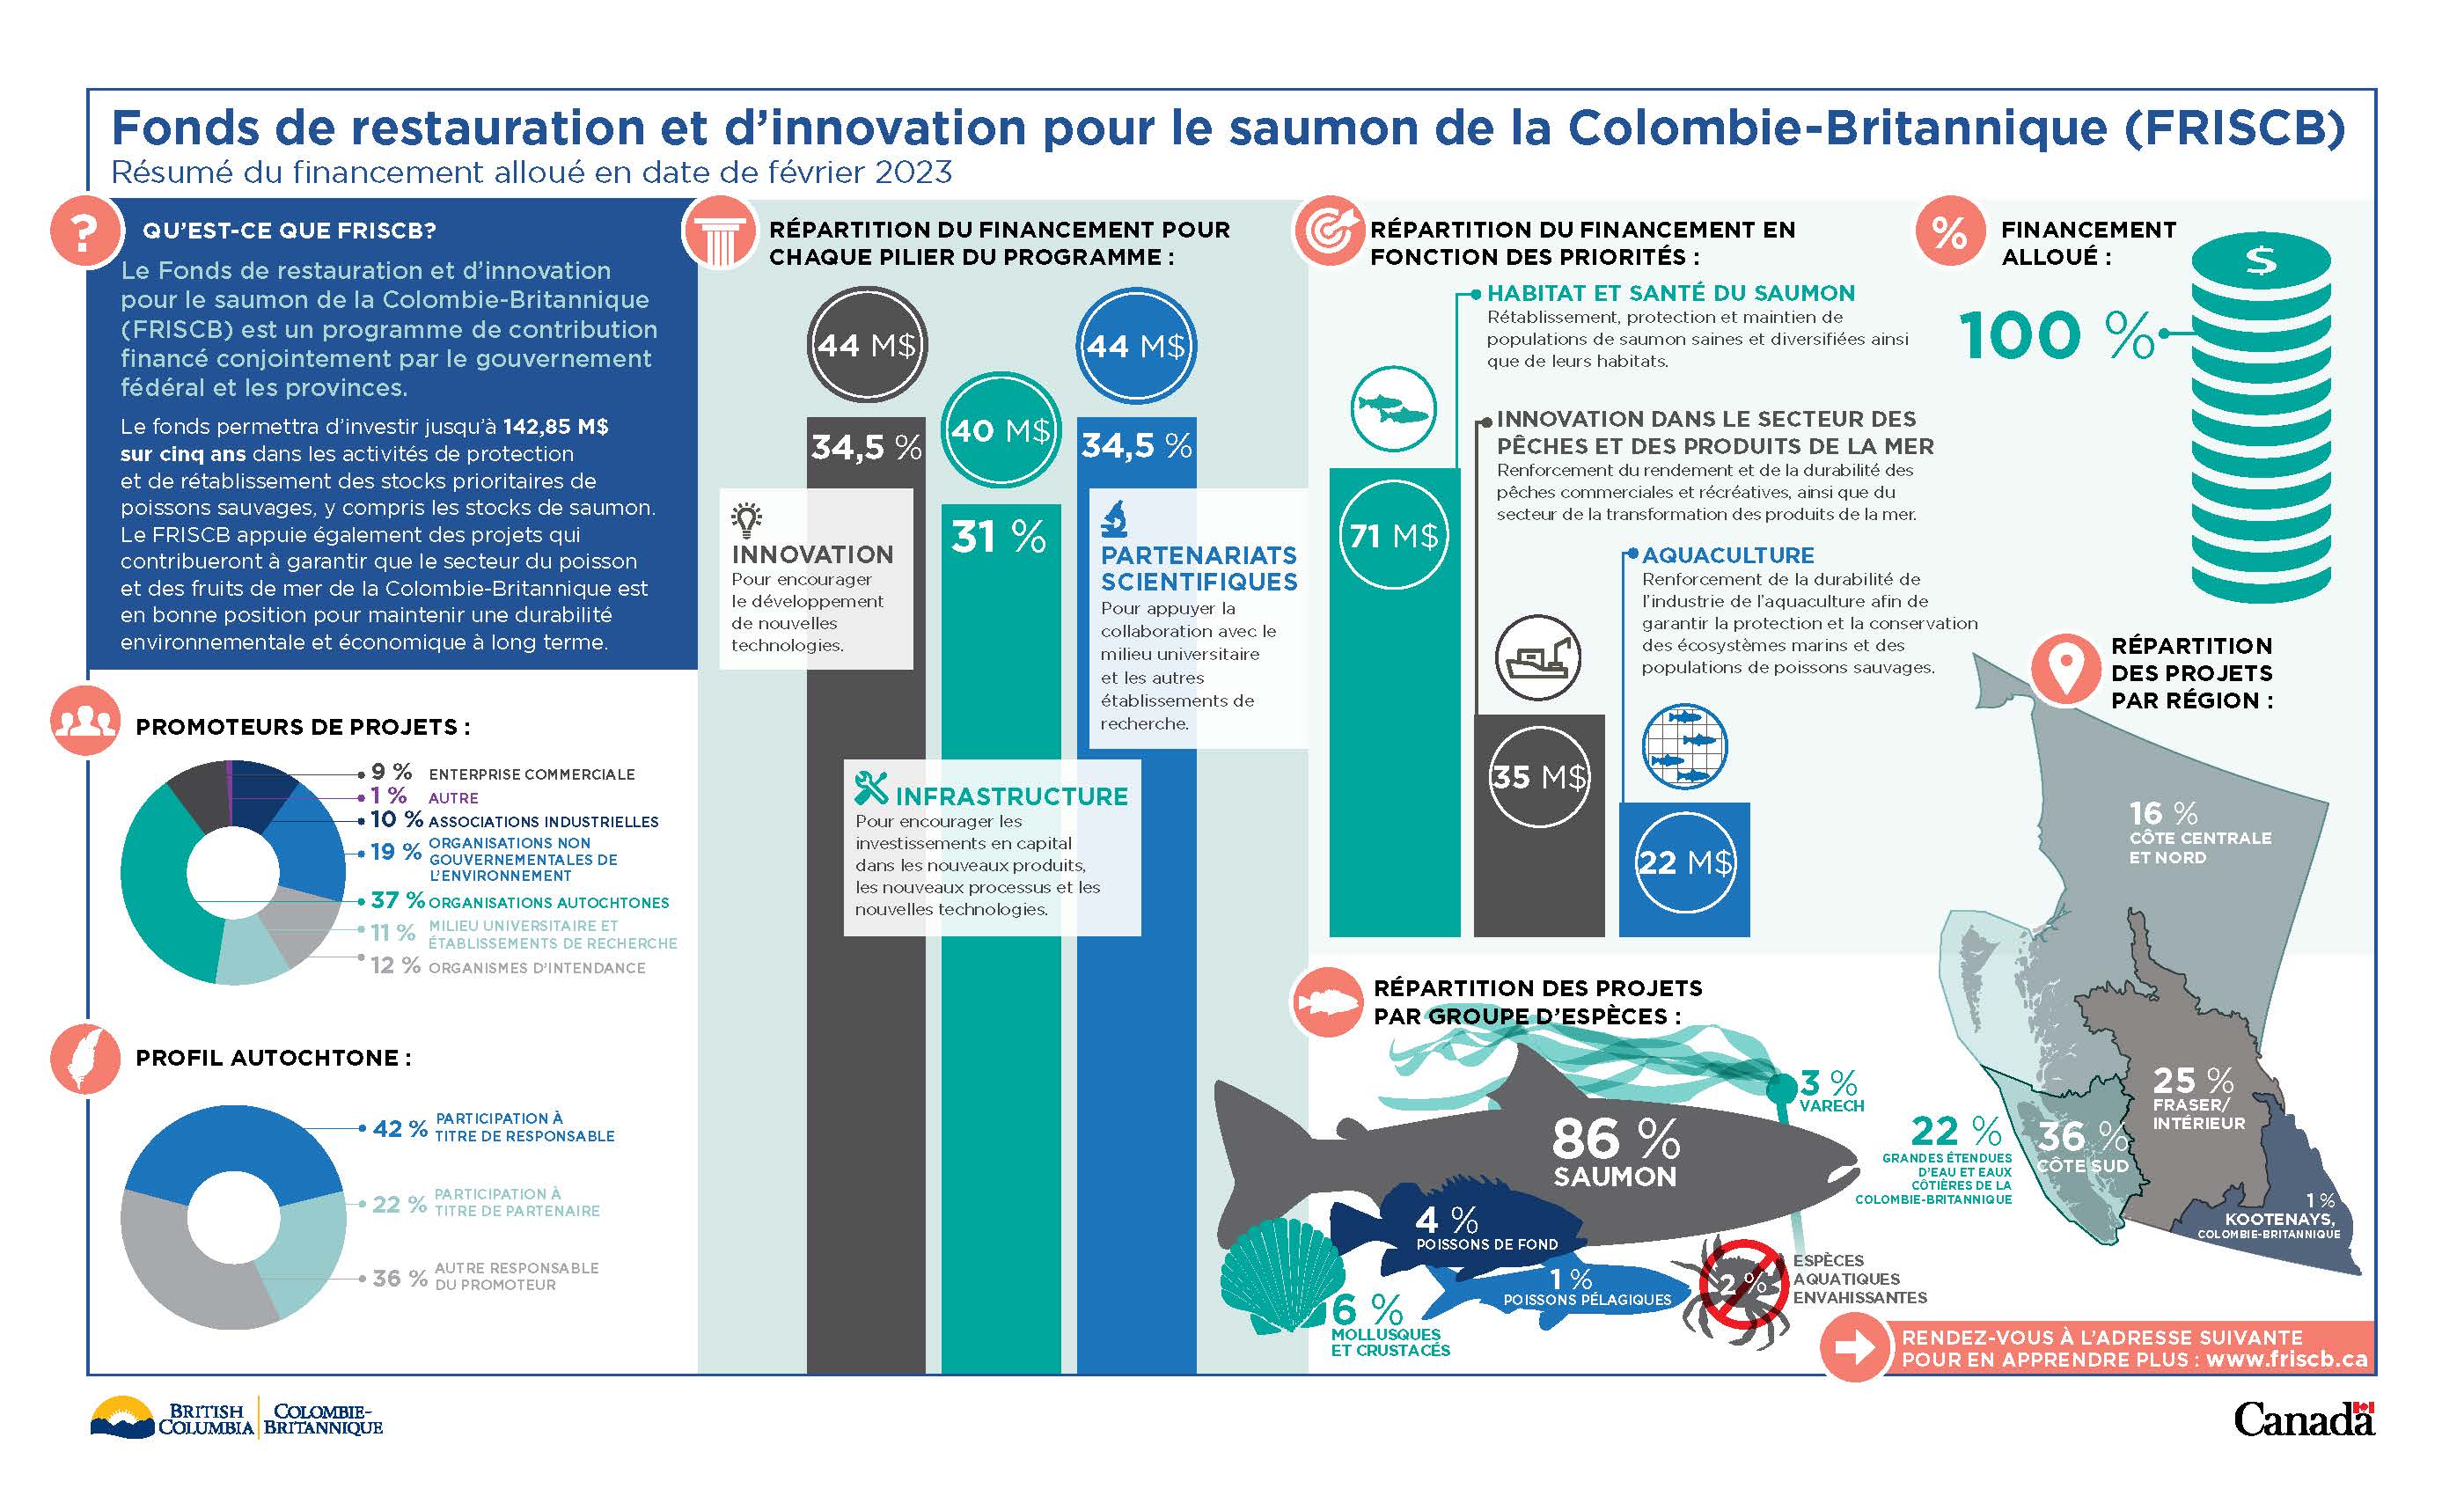 Infographie : Résumé du financement accordé au Fonds de restauration et d'innovation pour le saumon de la Colombie-Britannique en date de septembre 2021